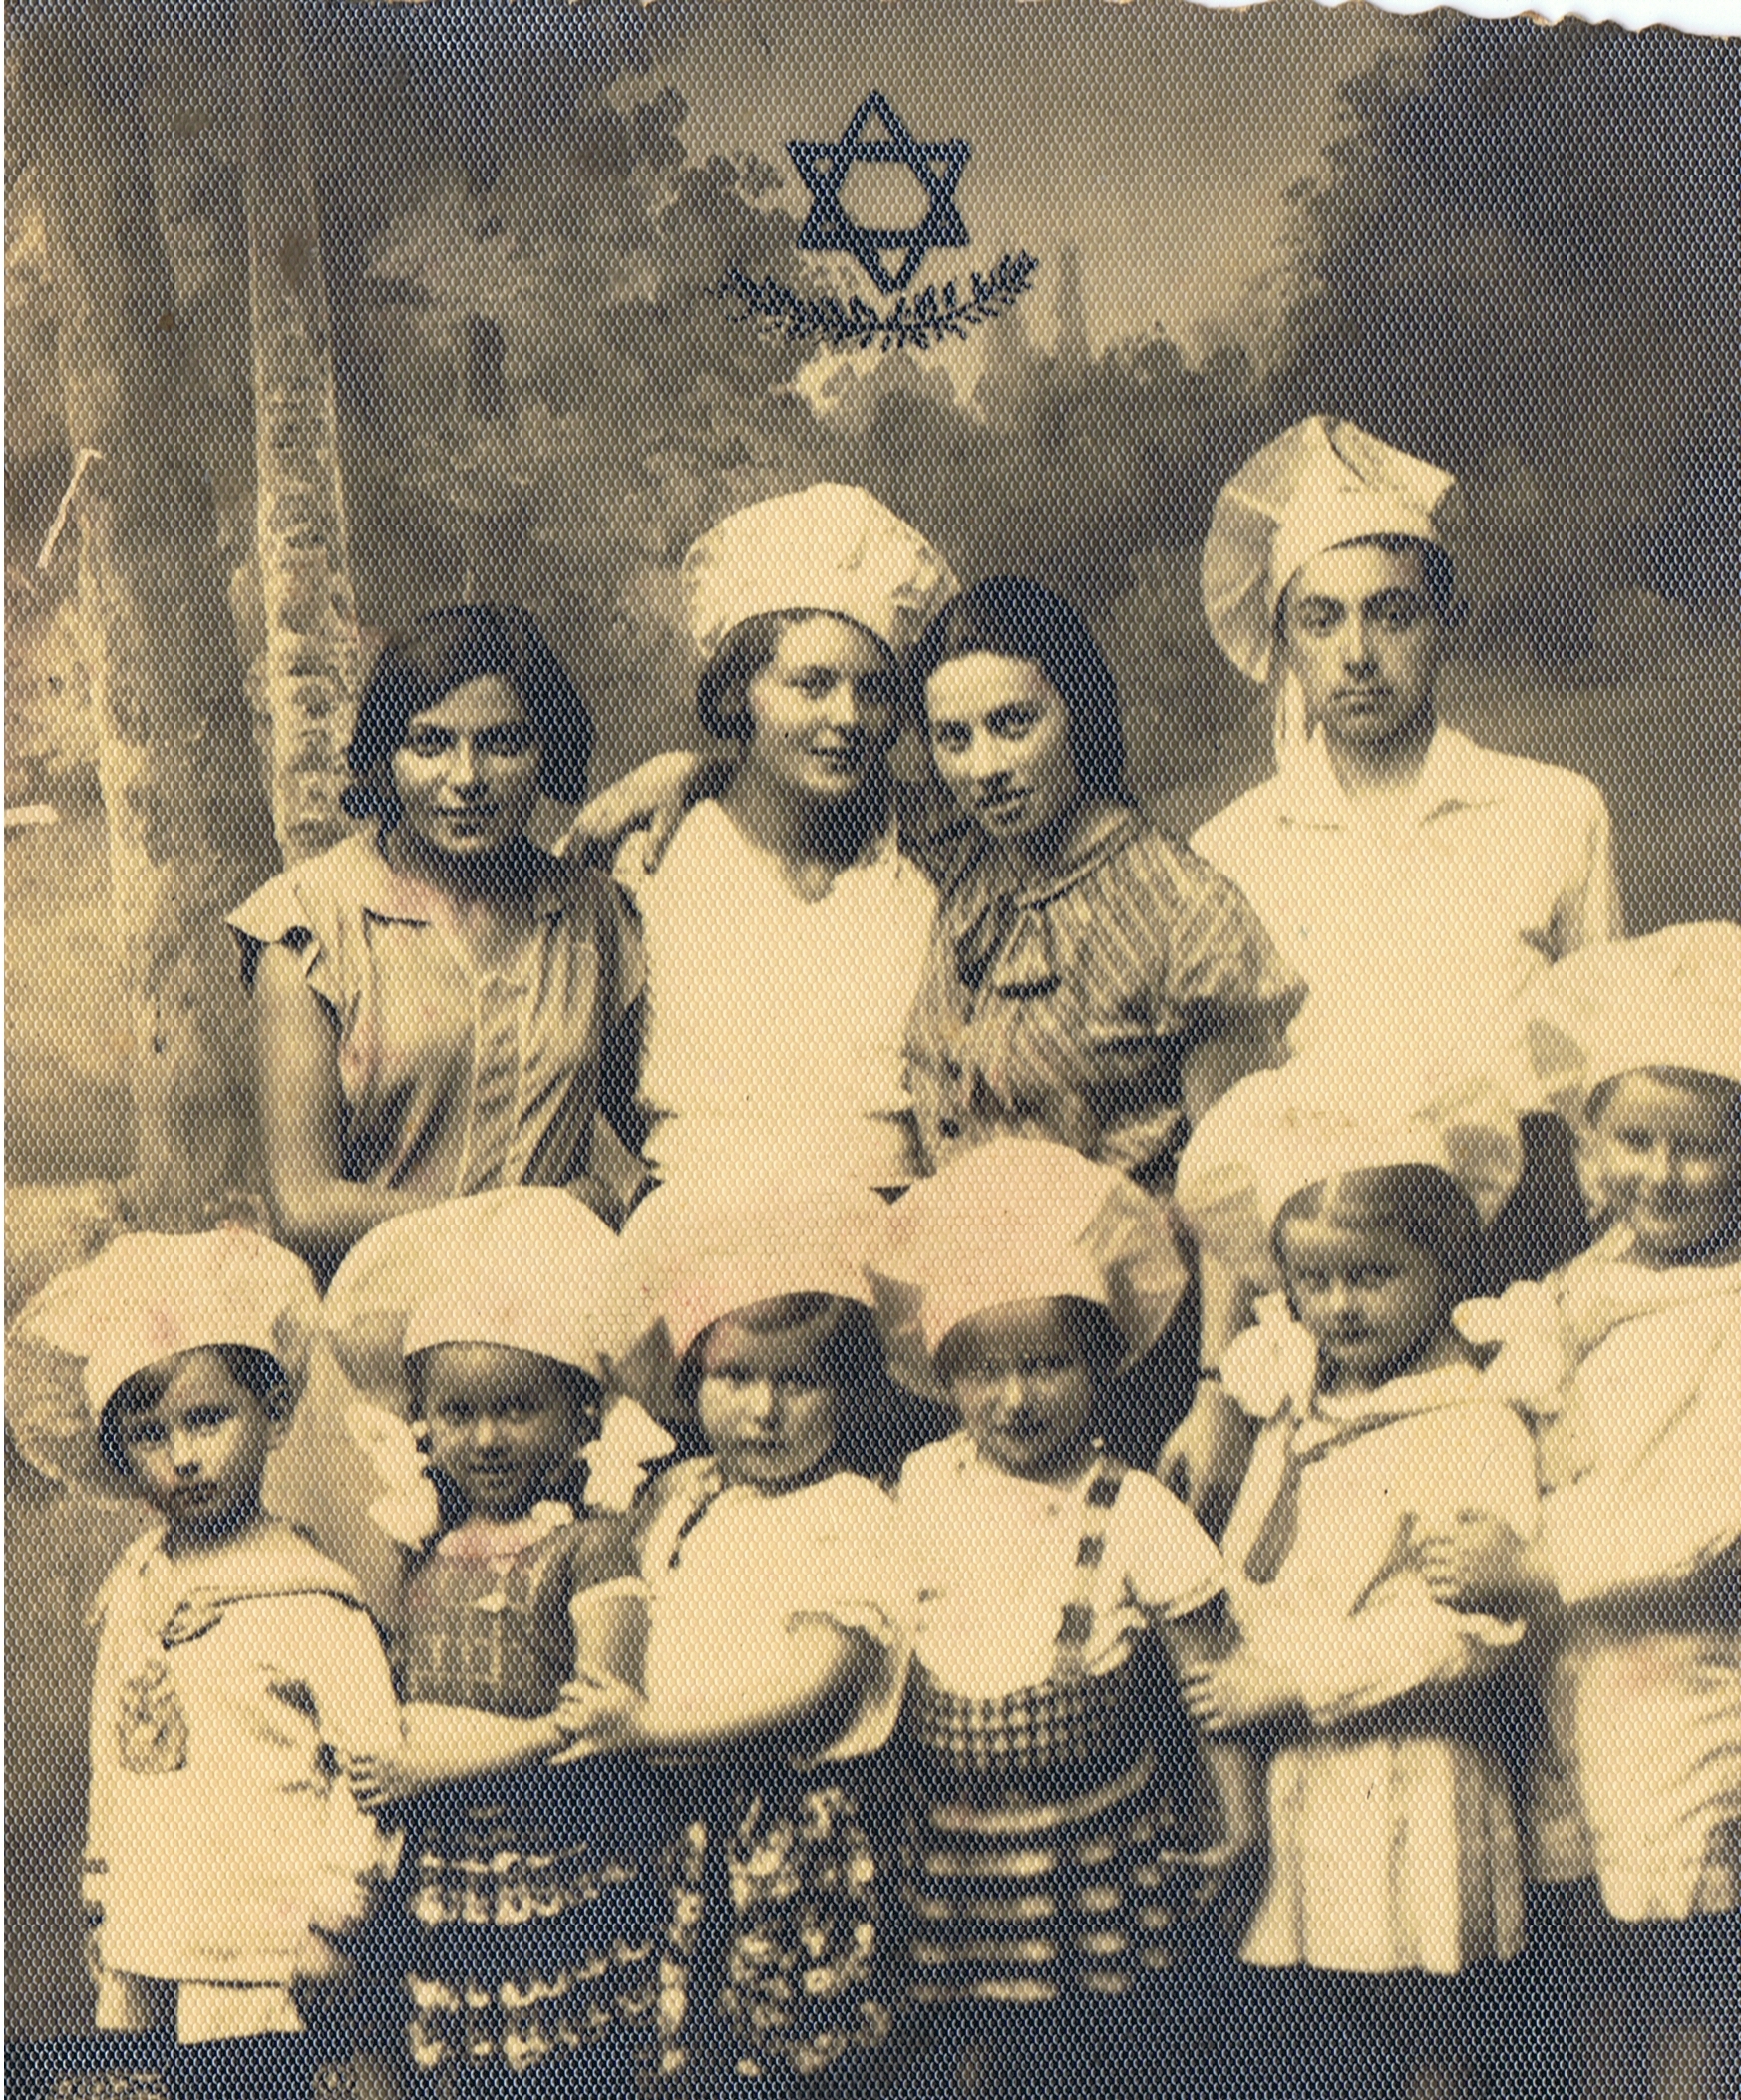 Żydowskie przedzkole Tarbut w Bielsku Podlaskim, 1937 r.